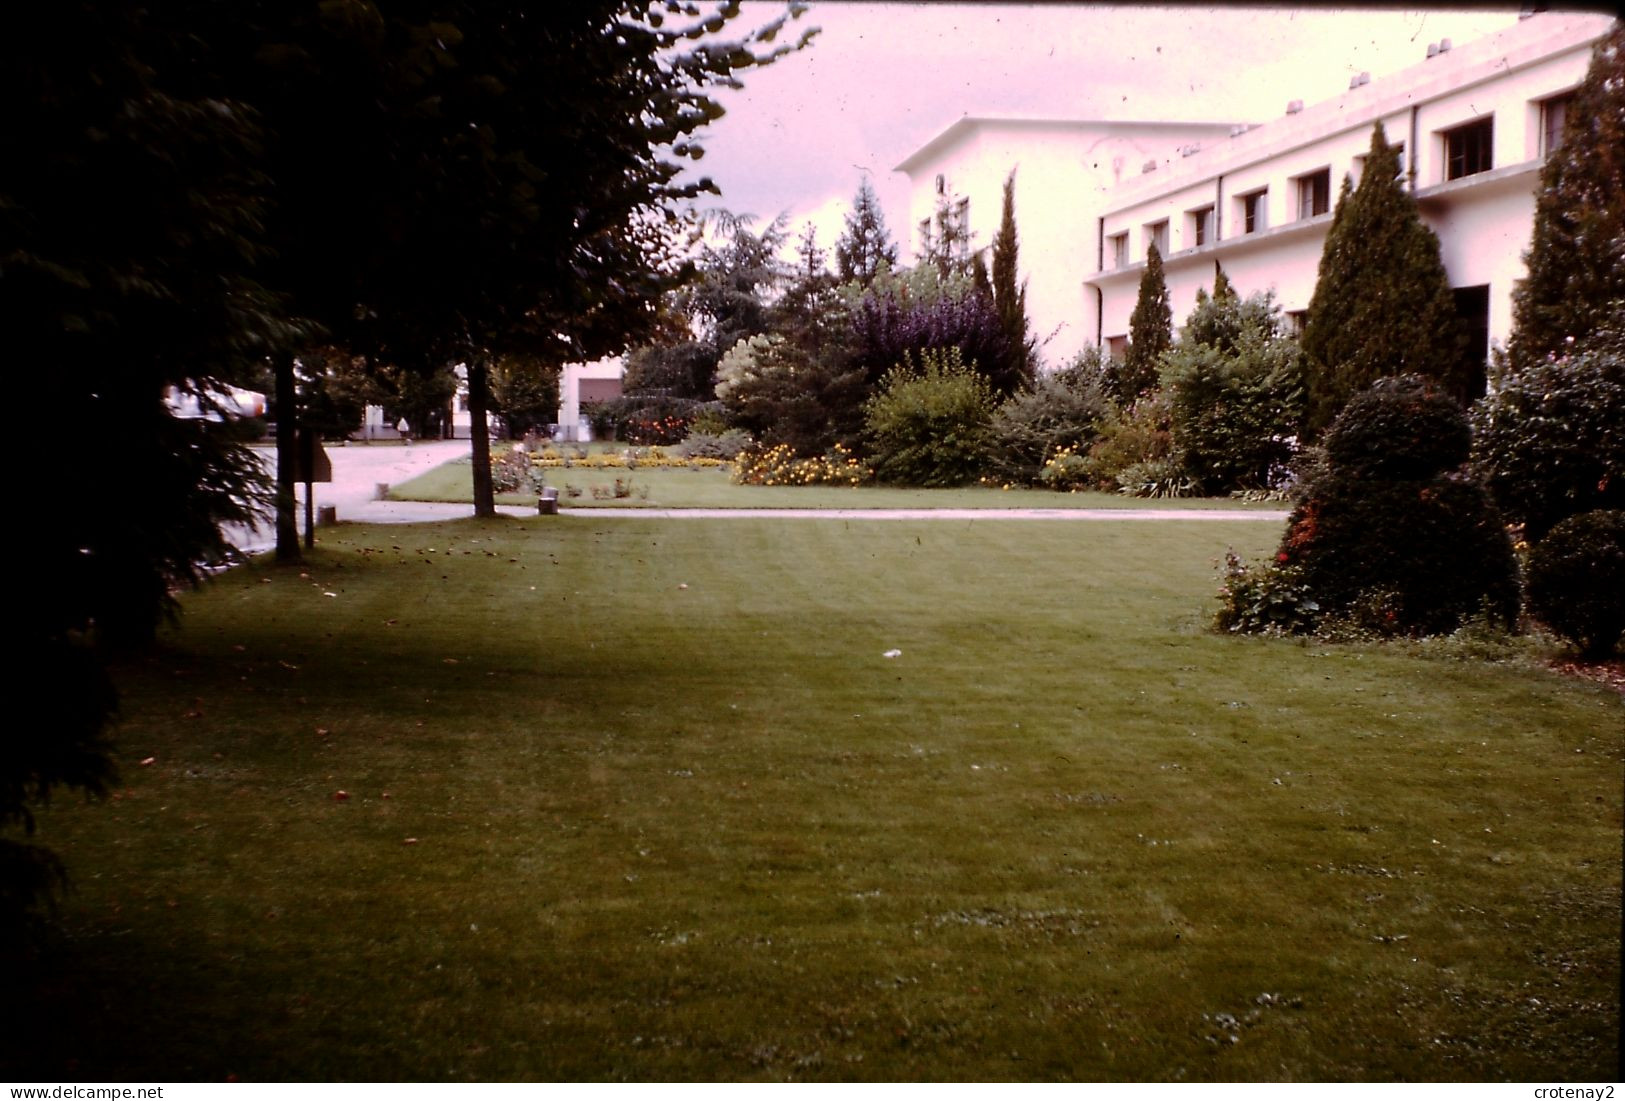 Photo Diapo Diapositive Slide à Situer Beau Jardin En 1963 VOIR ZOOM - Diapositives